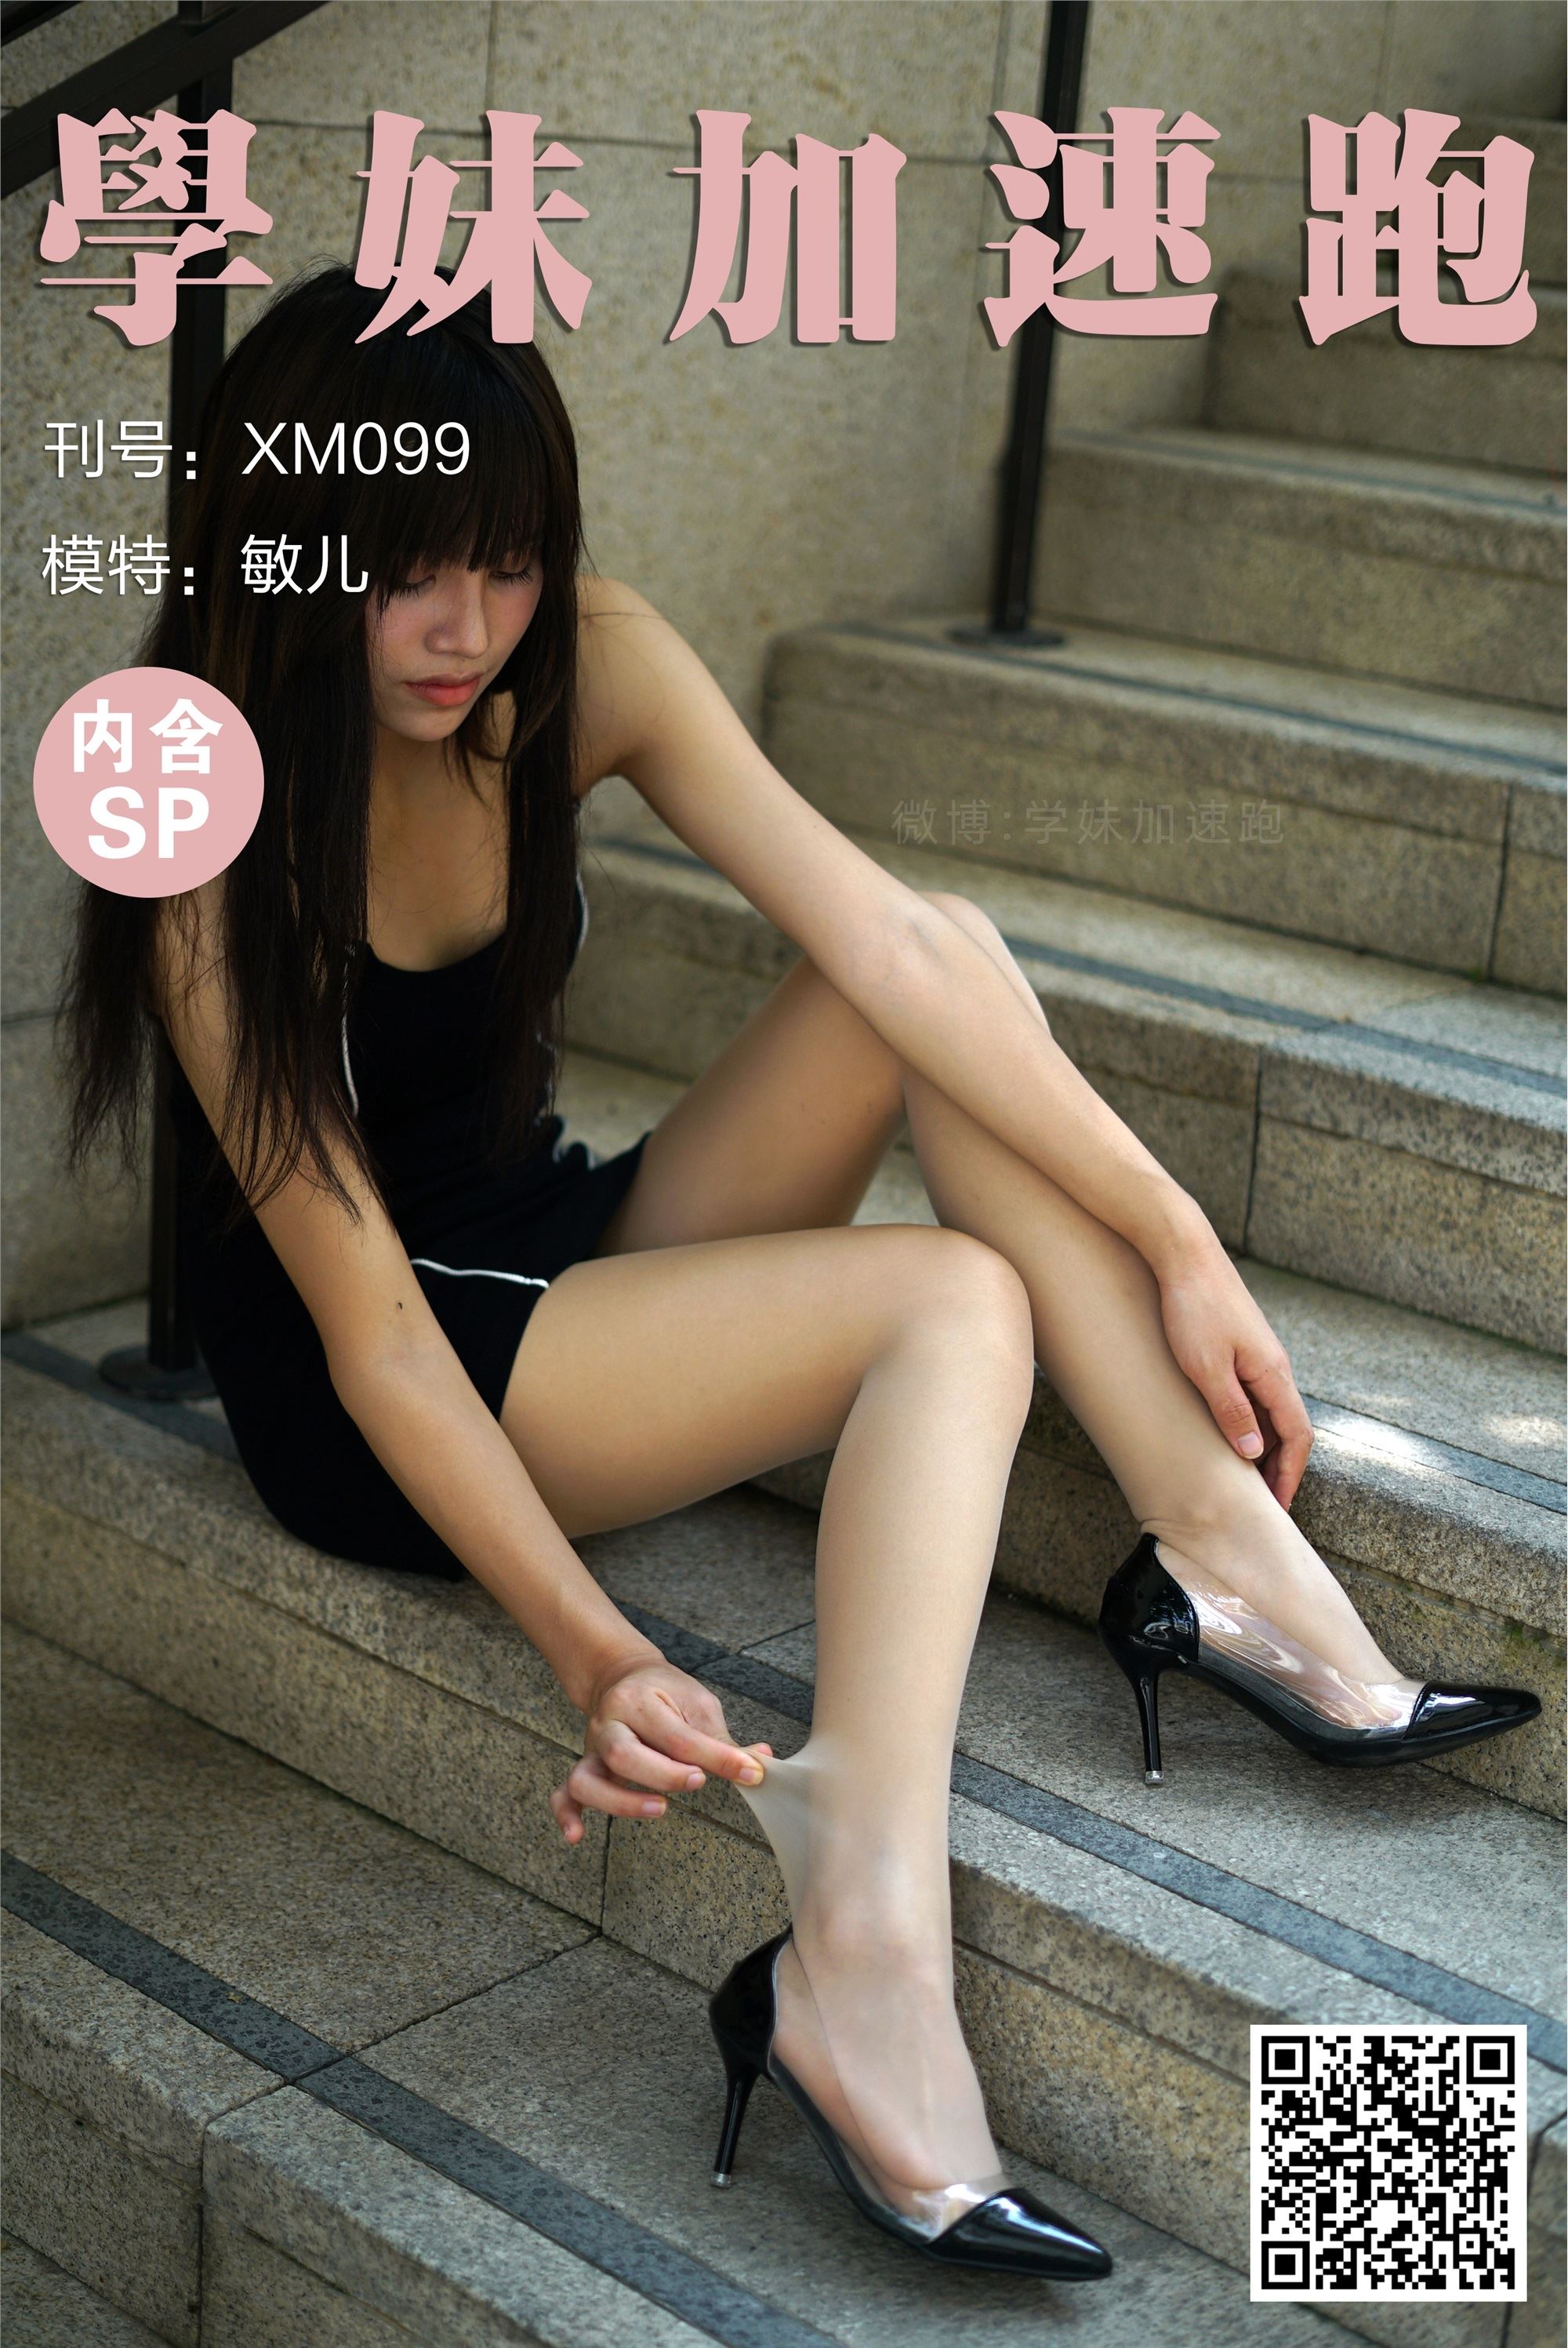 【學妹加速跑】XM099《光天化日下的敏兒》【95P】 - 貼圖 - 絲襪美腿 -